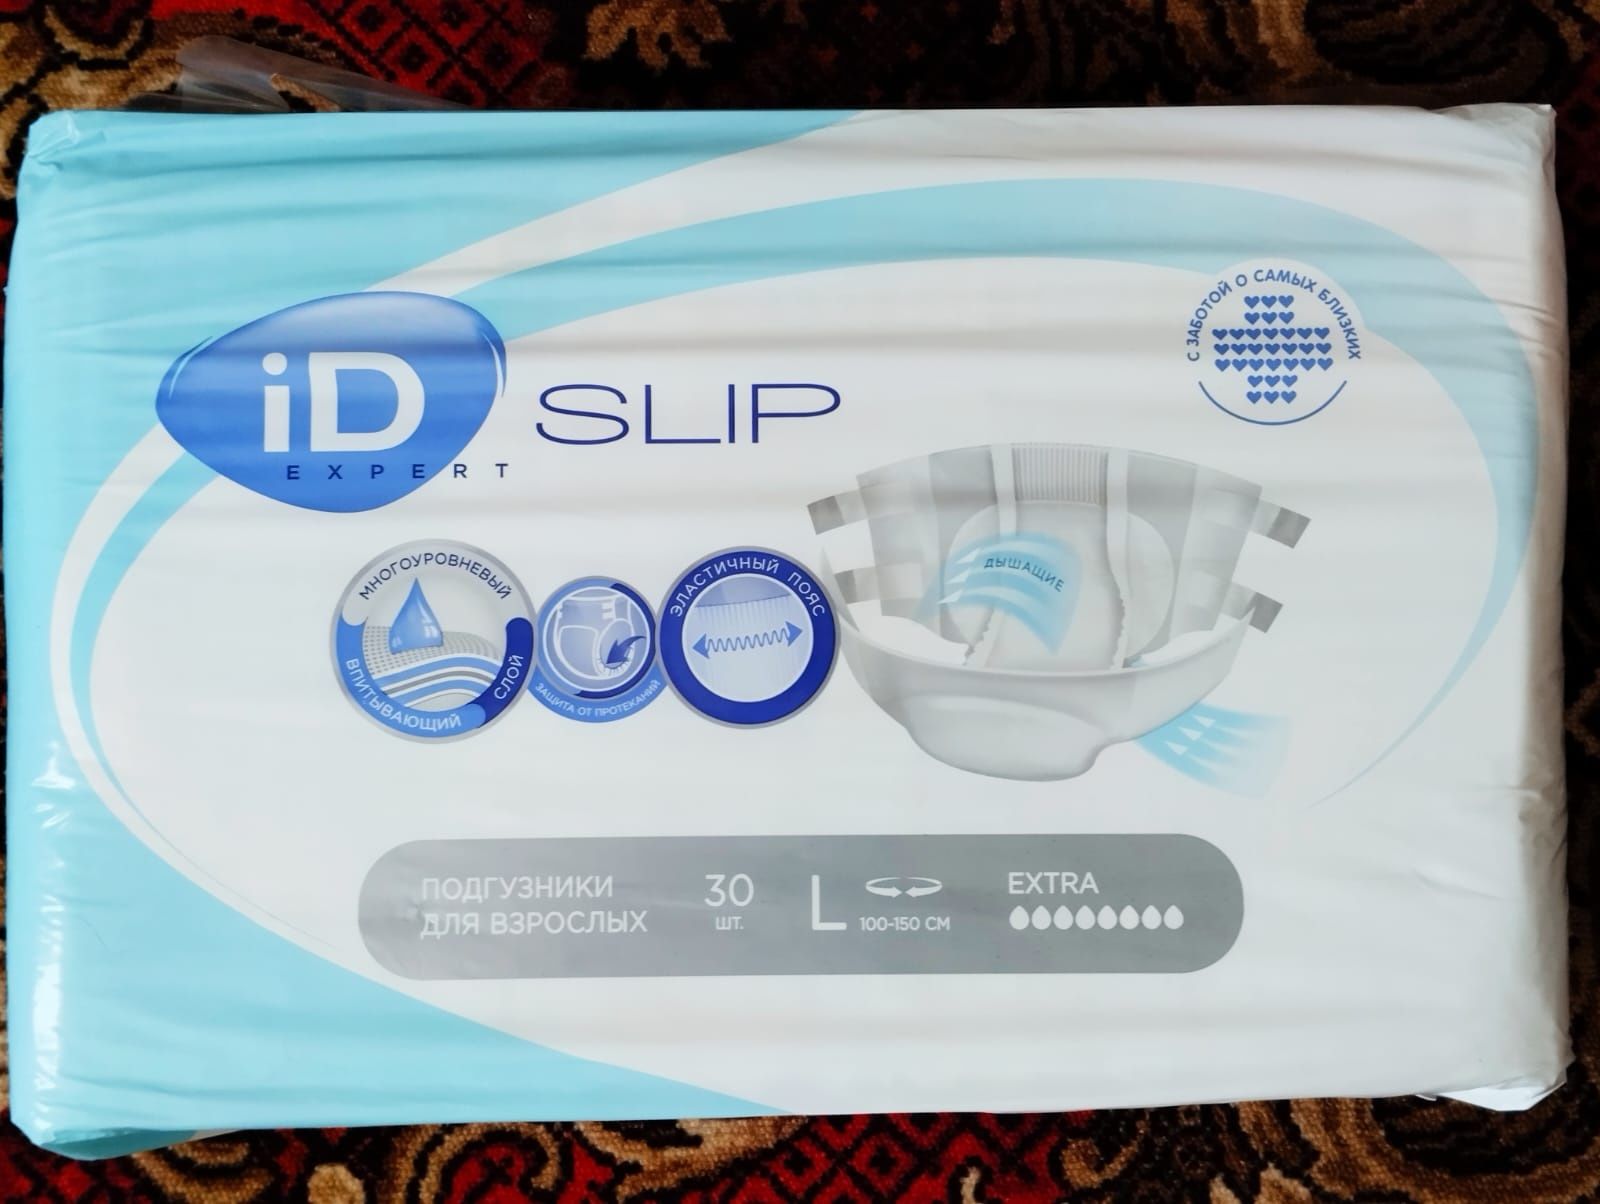 Подгузники для взрослых ID Slip L 100-150 см  EXTRA упаковка 30штук..